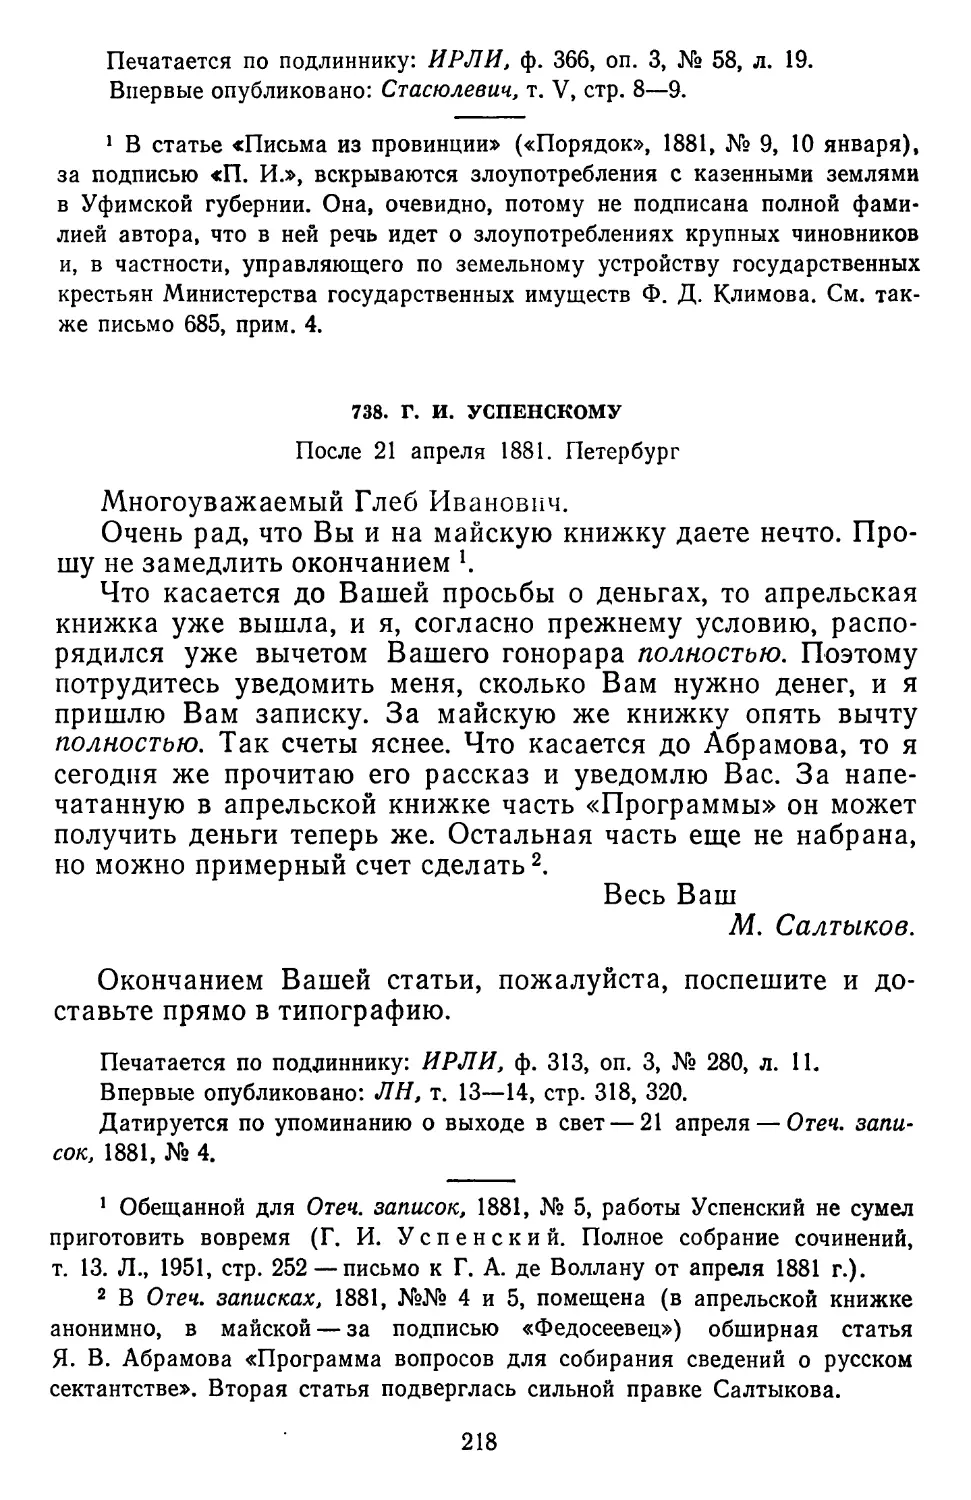 738.Г. И. Успенскому. После 21 апреля 1881. Петербург